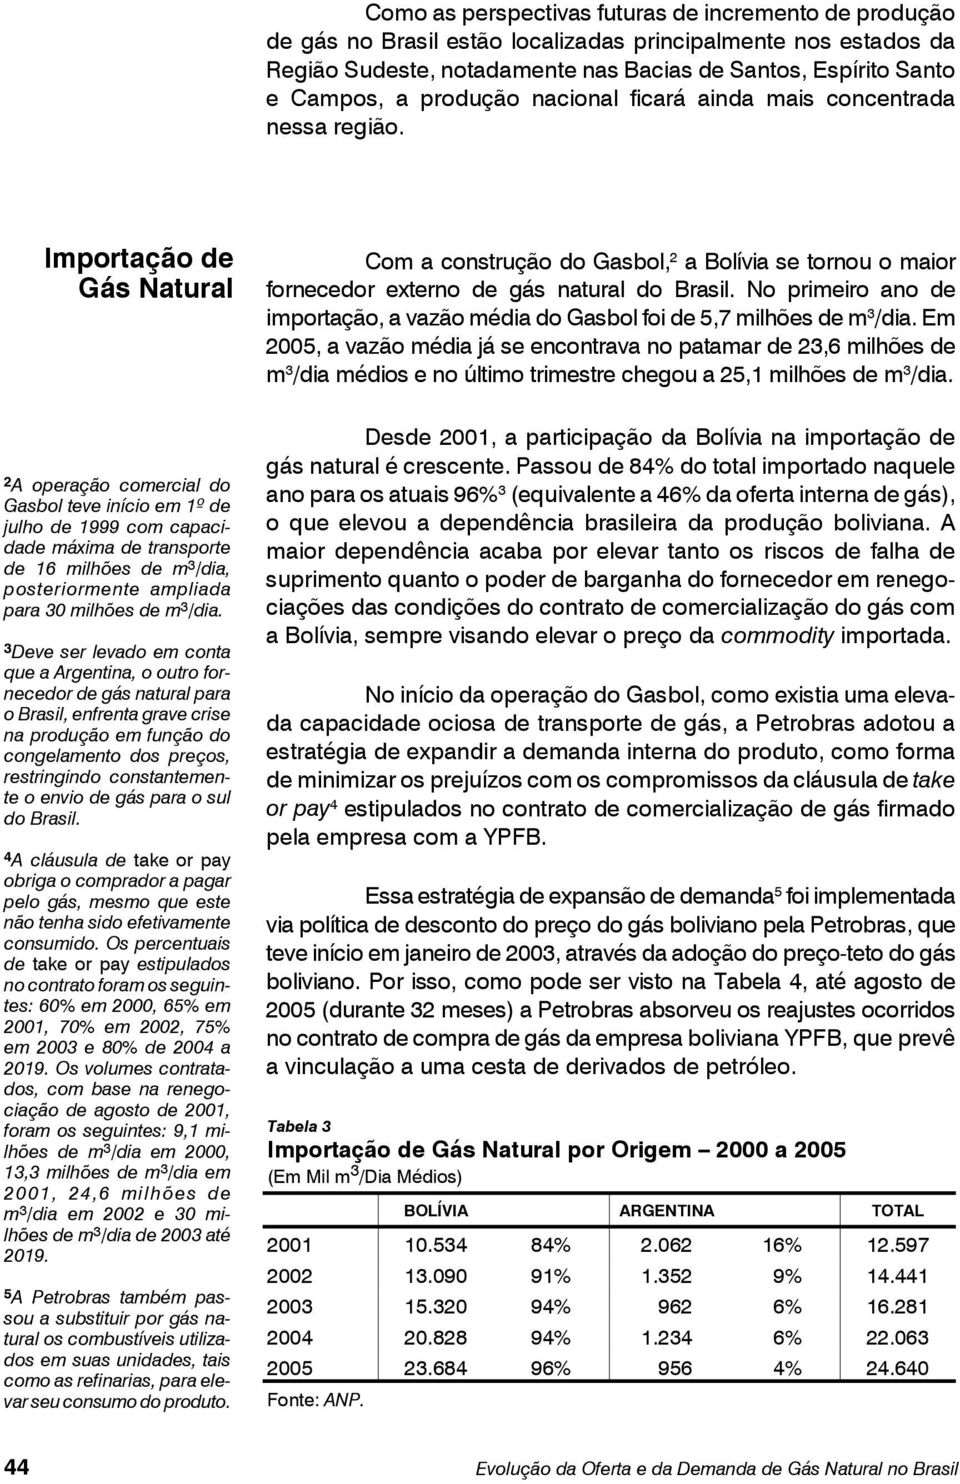 Importação de Gás Natural 2 A operação comercial do Gasbol teve início em 1º de julho de 1999 com capacidade máxima de transporte de 16 milhões de m 3 /dia, posteriormente ampliada para 30 milhões de